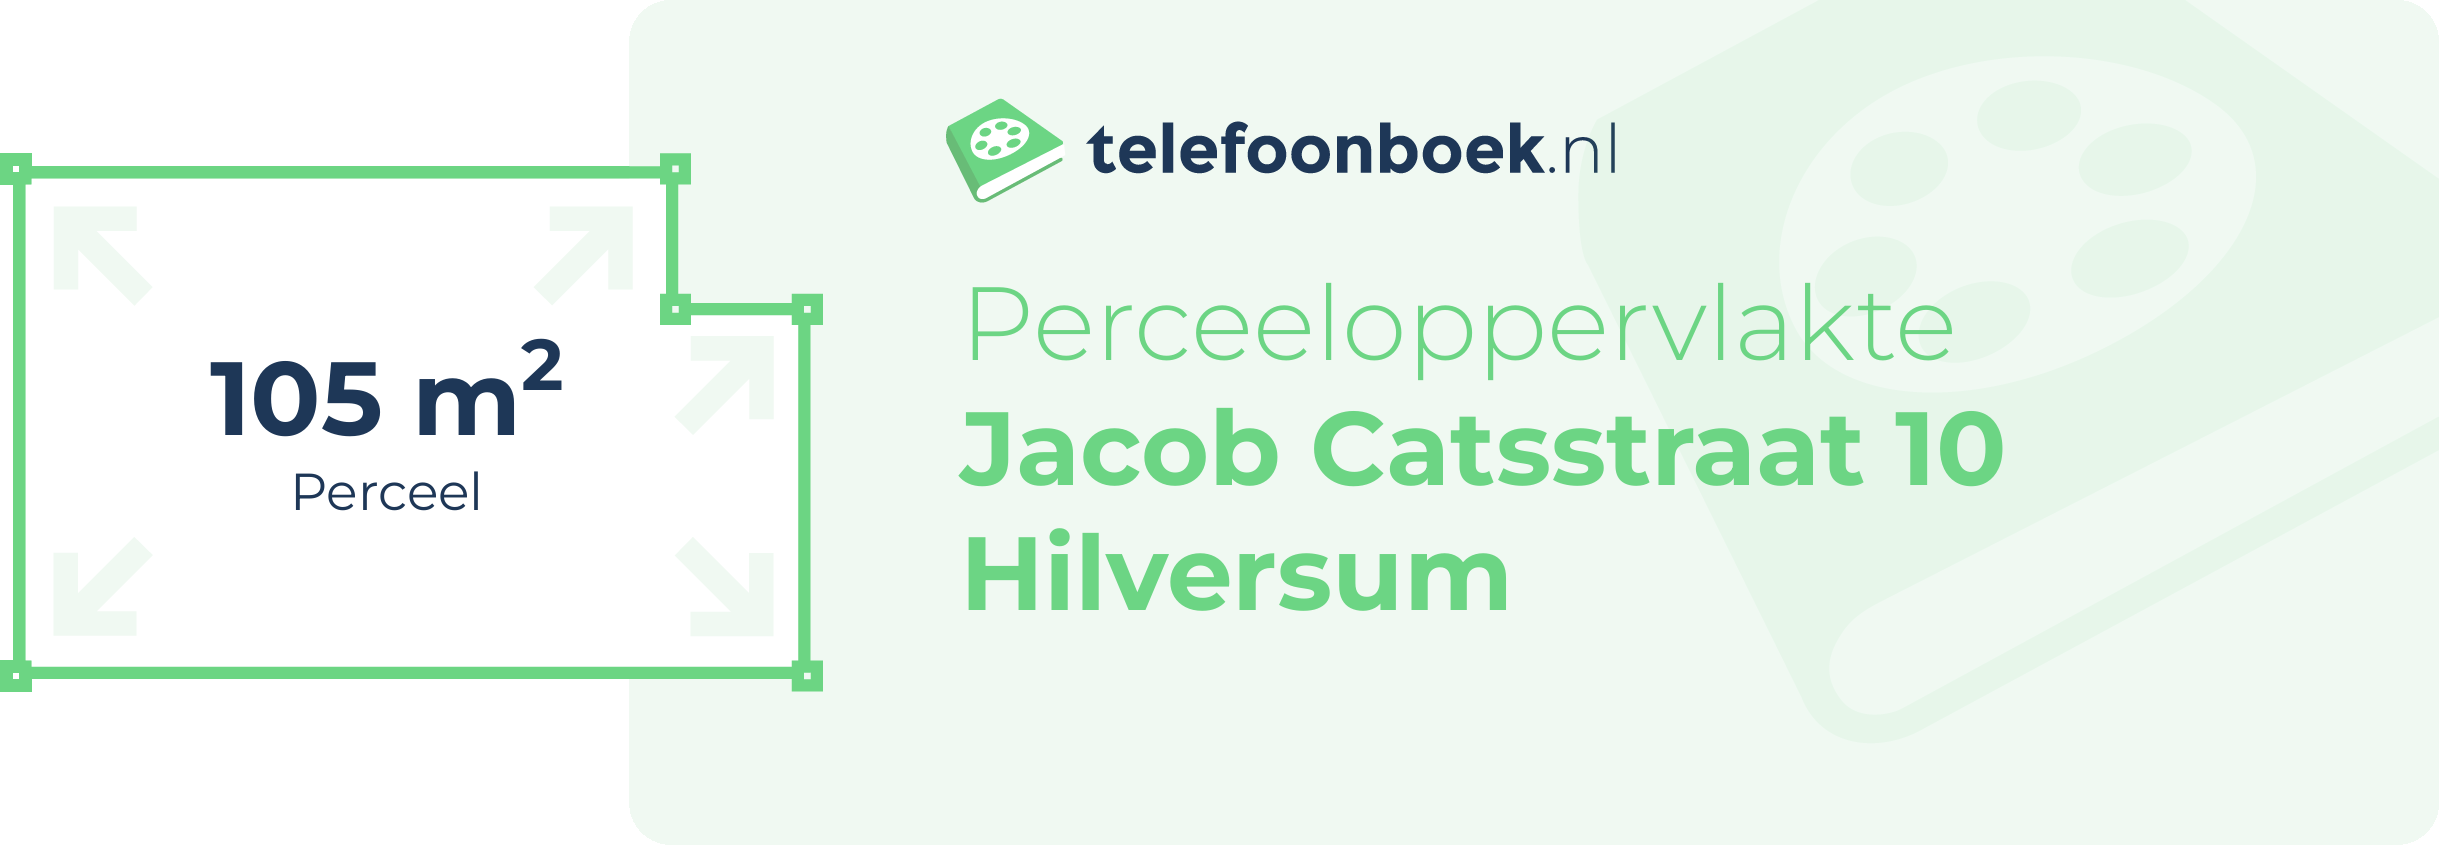 Perceeloppervlakte Jacob Catsstraat 10 Hilversum